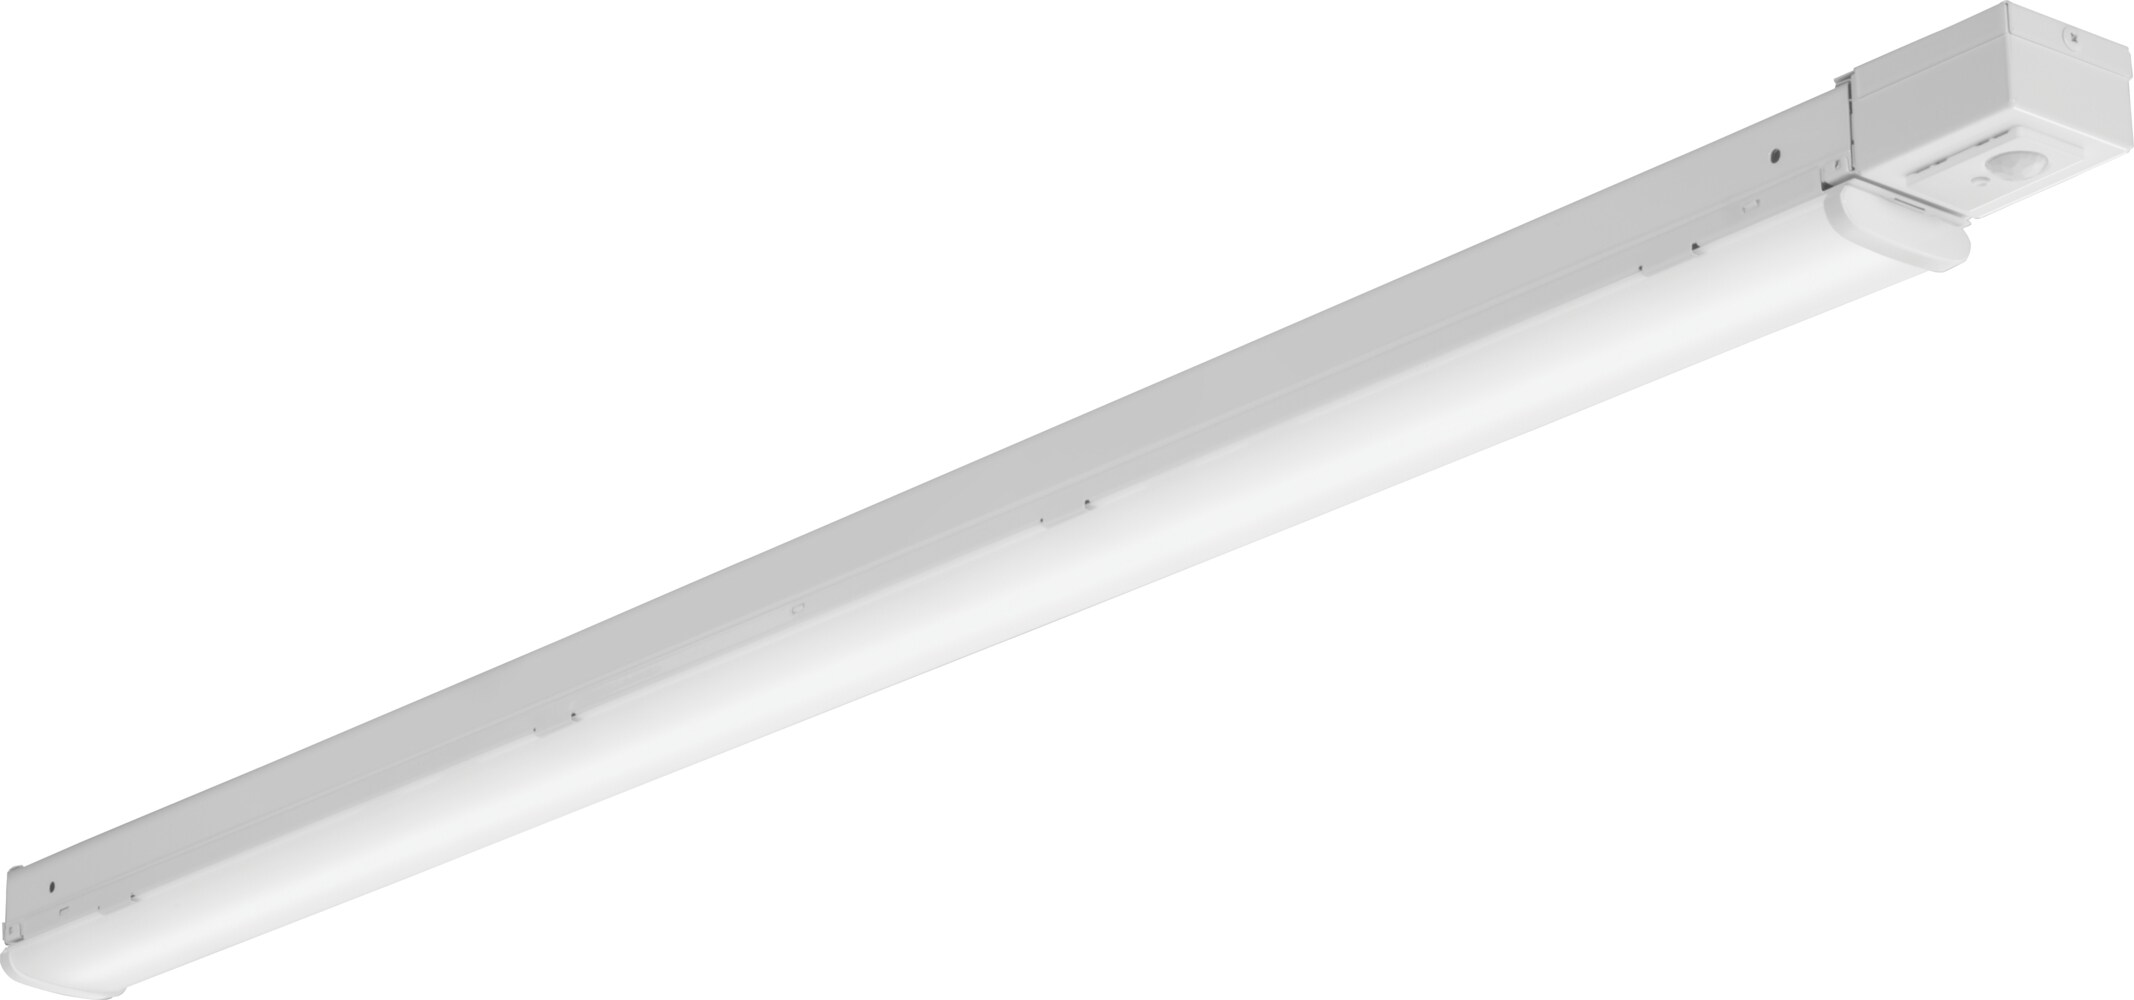 Lithonia Lighting 8-ft 2-Light Cool White LED Strip Light in the